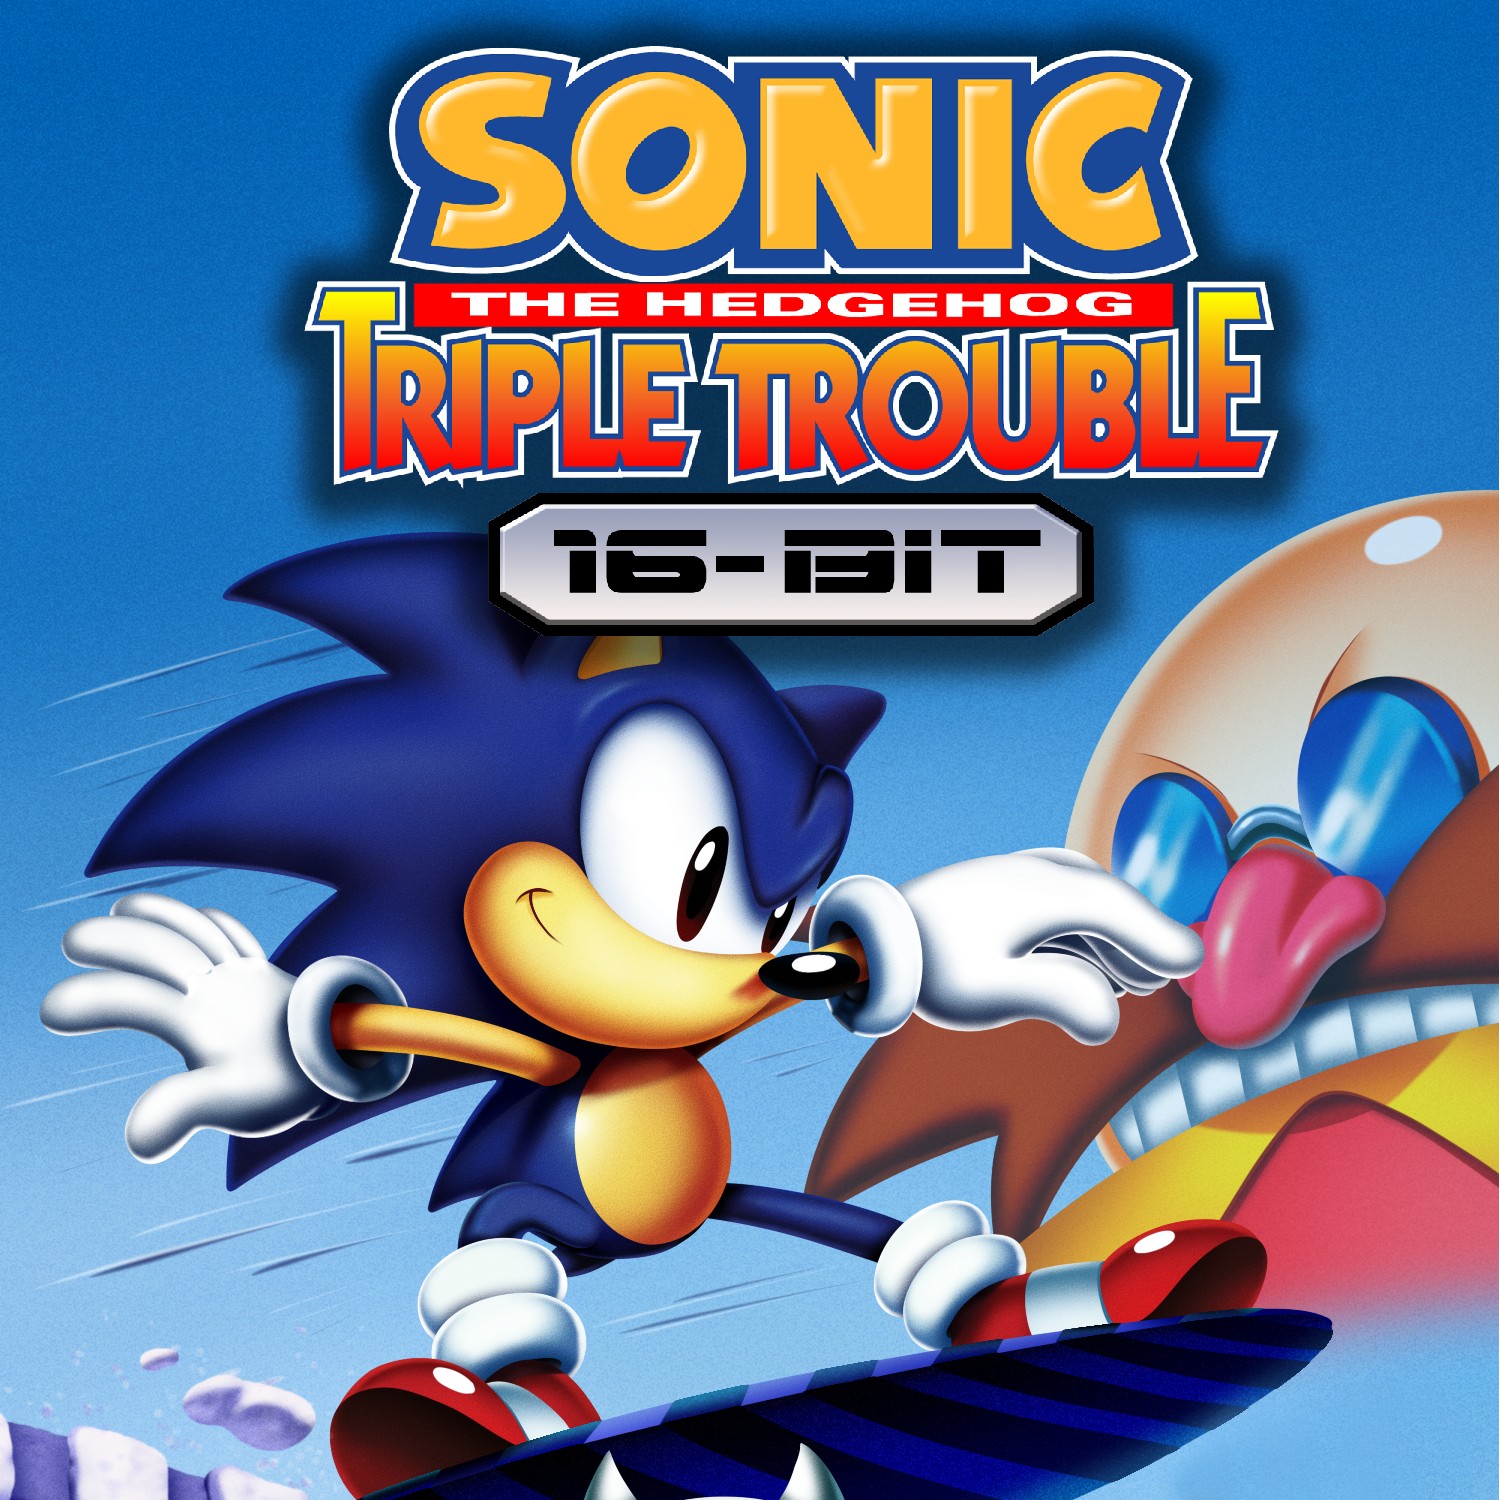 Sonic triple trouble 16-bit ost